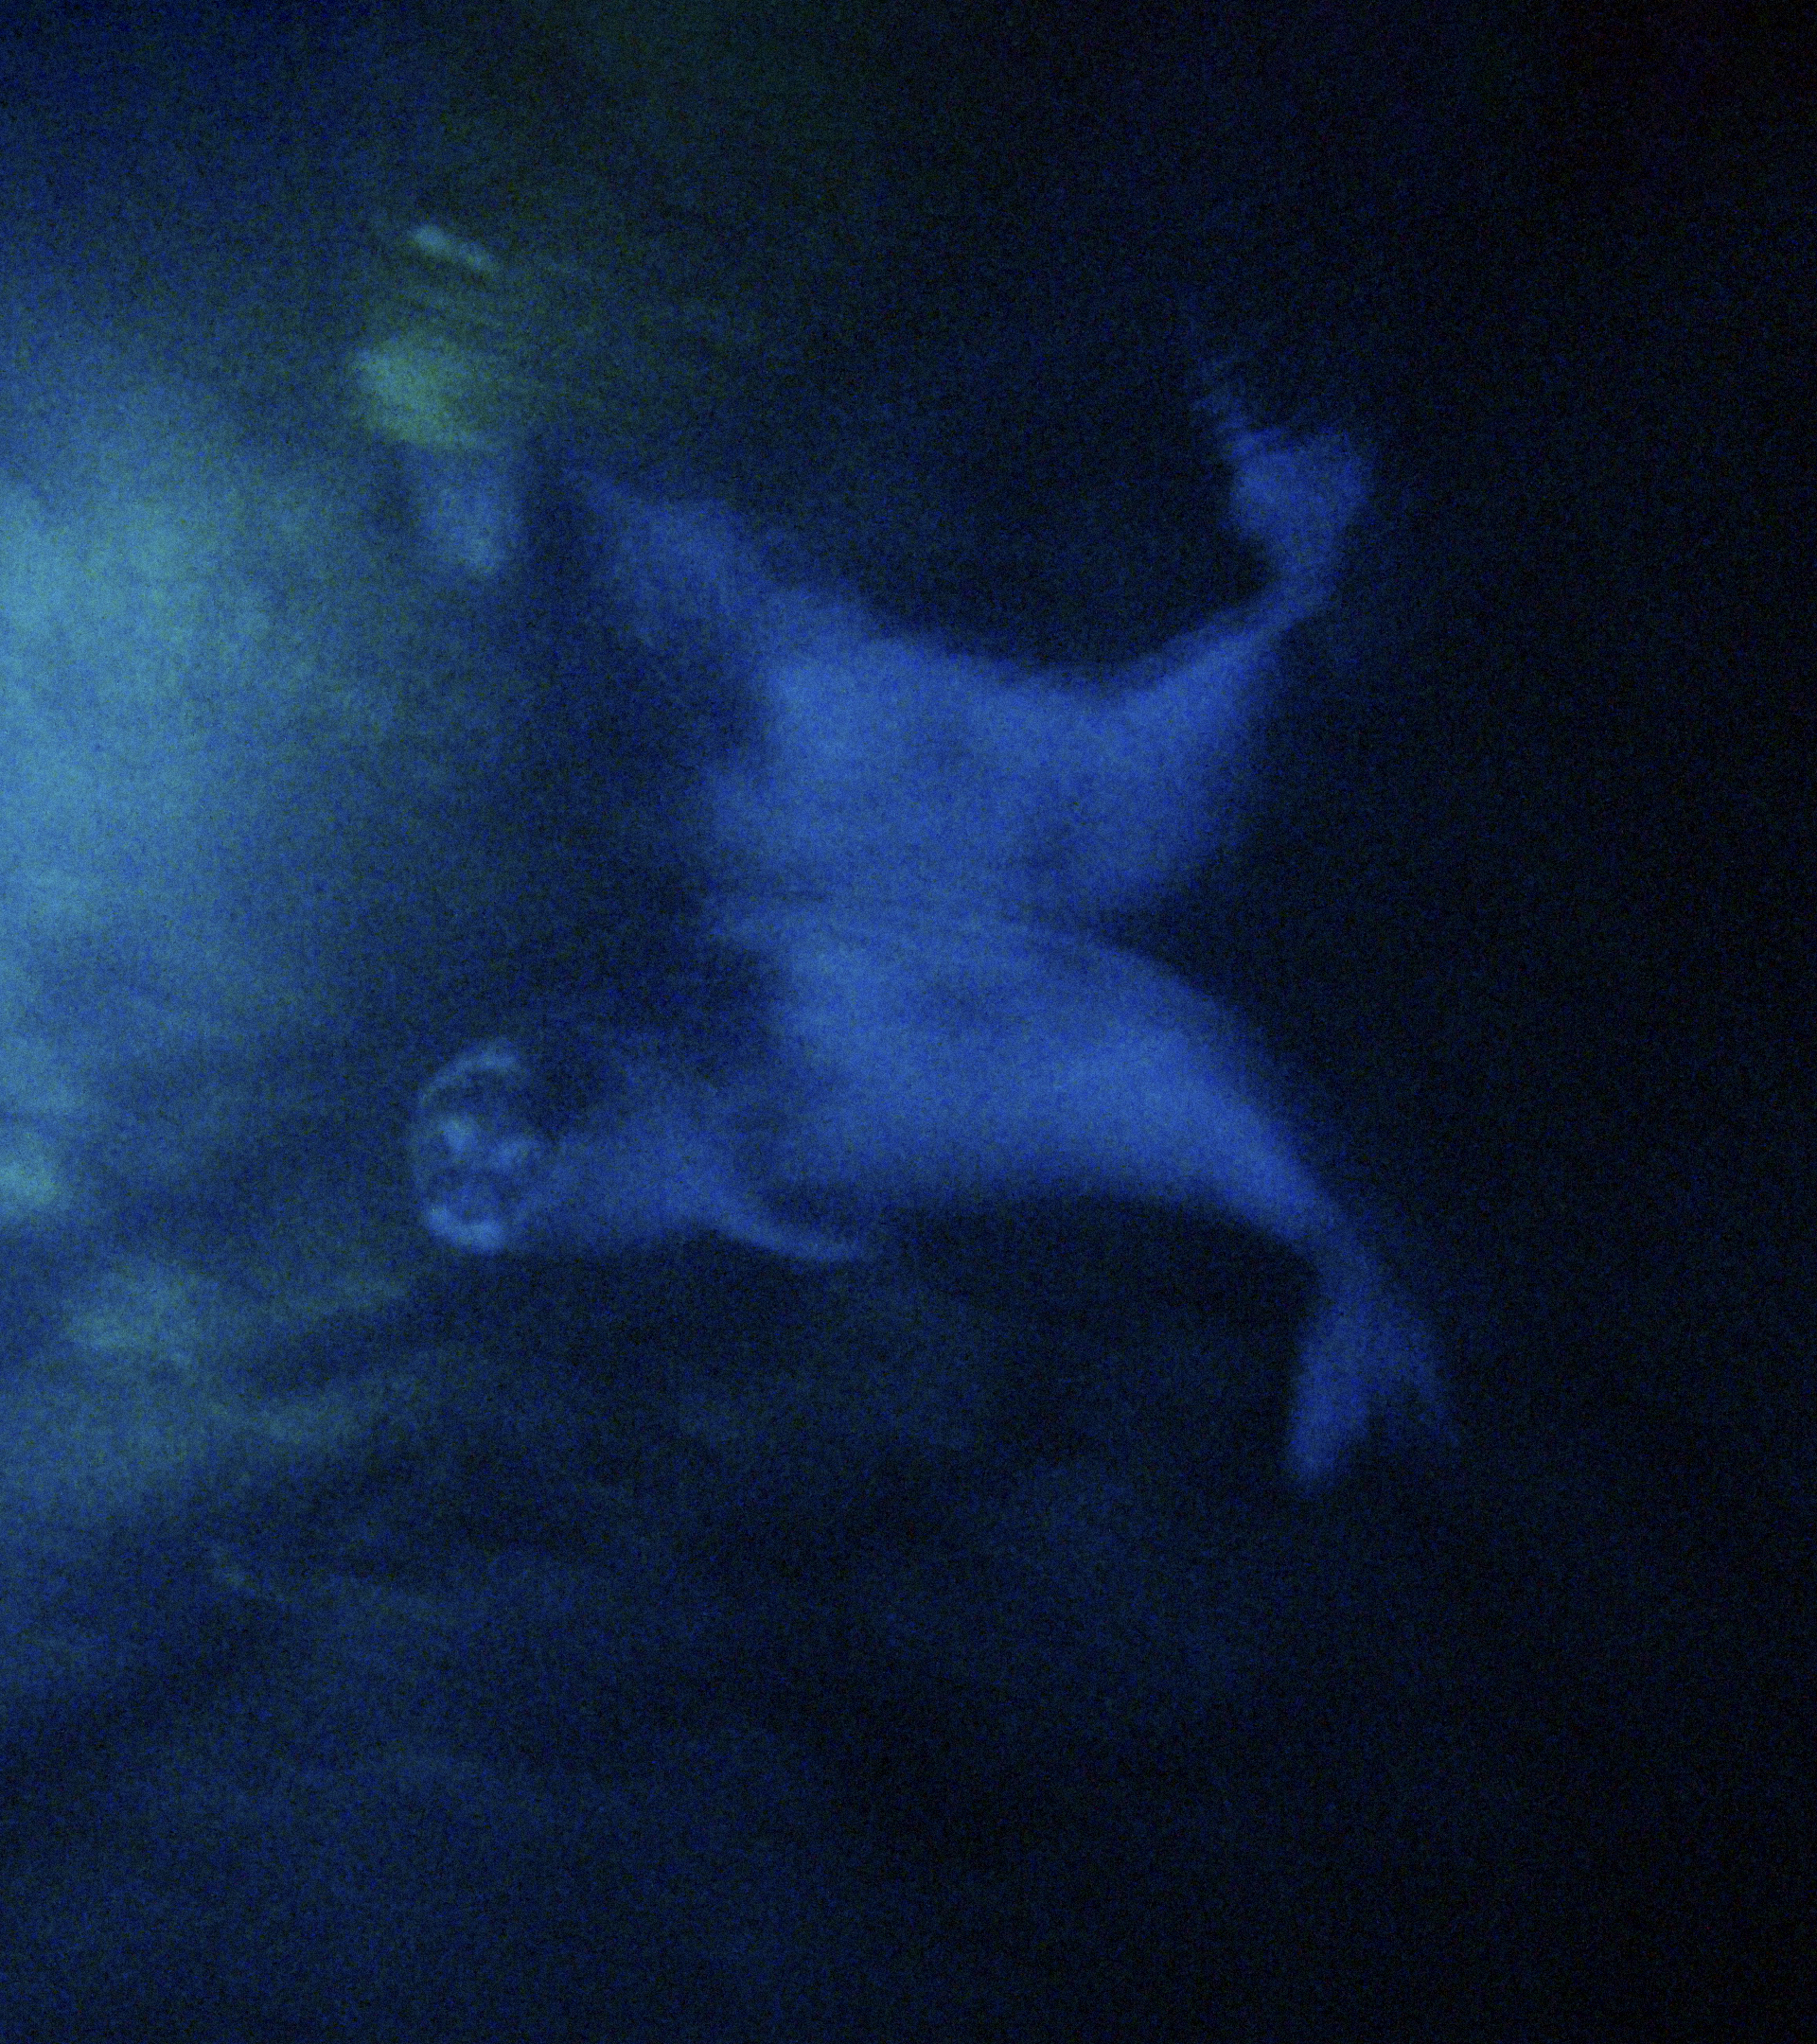 Ultima foto de la foca monje en Baleares, tomada en 2008 en una cueva submarina entre Calvi y Valldemossa